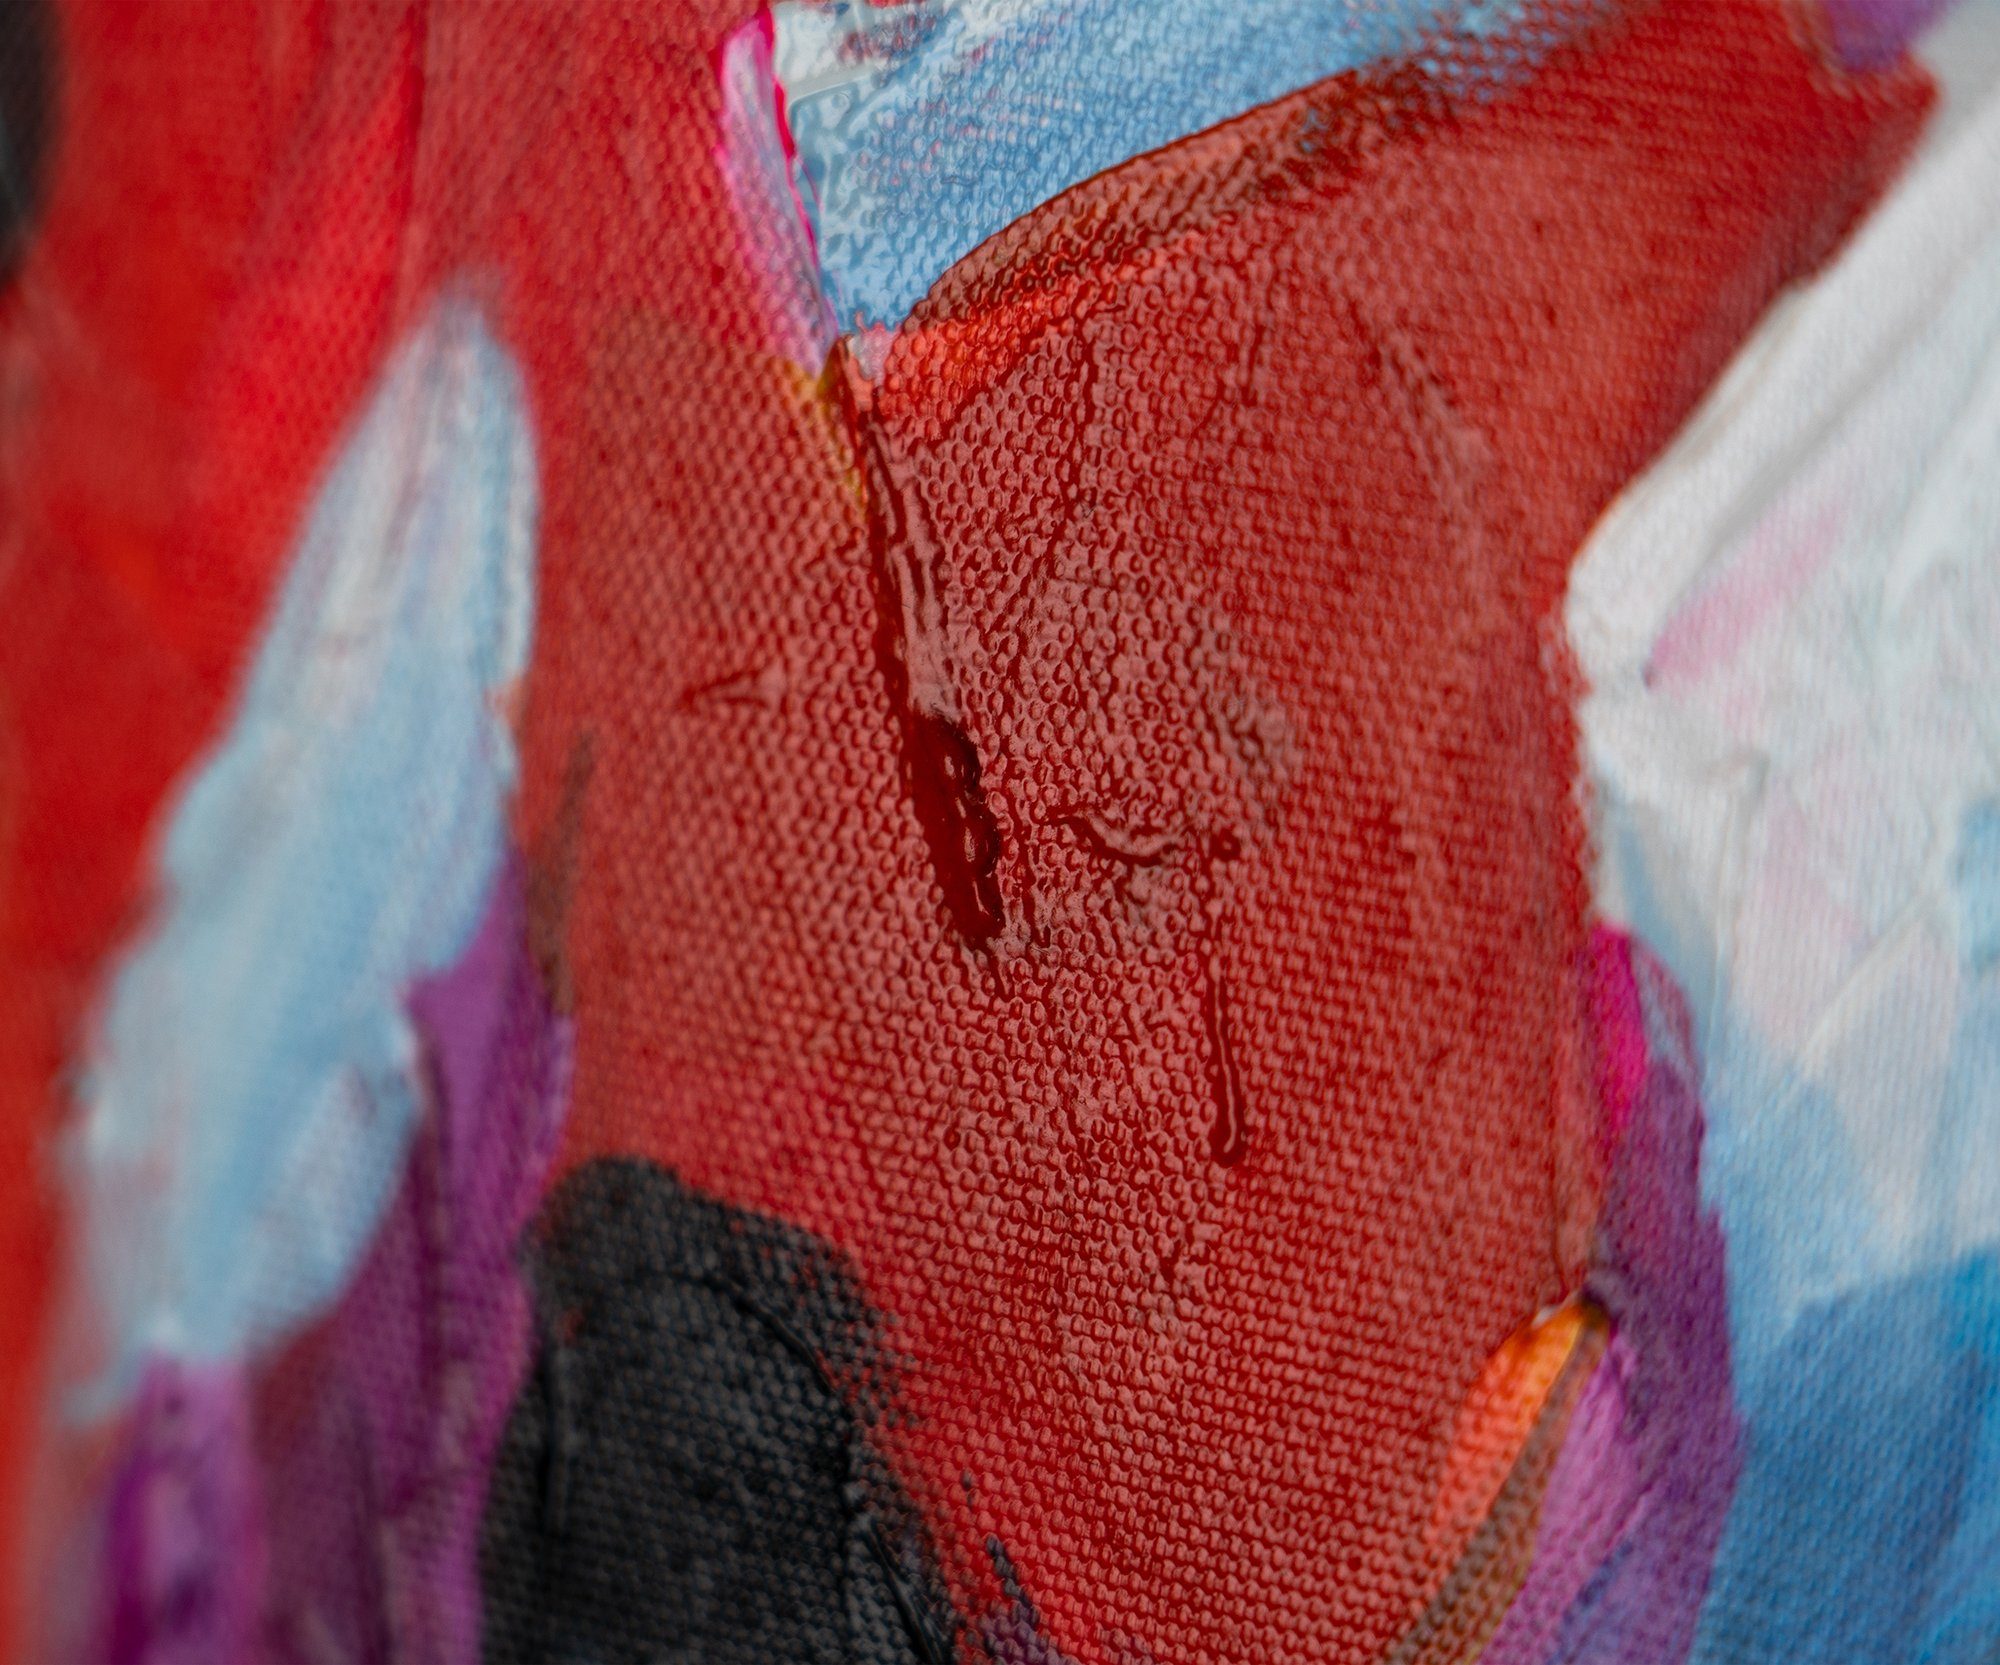 Menschen Liebe, Mit Rosa YS-Art in der Gemälde Farben Rahmen